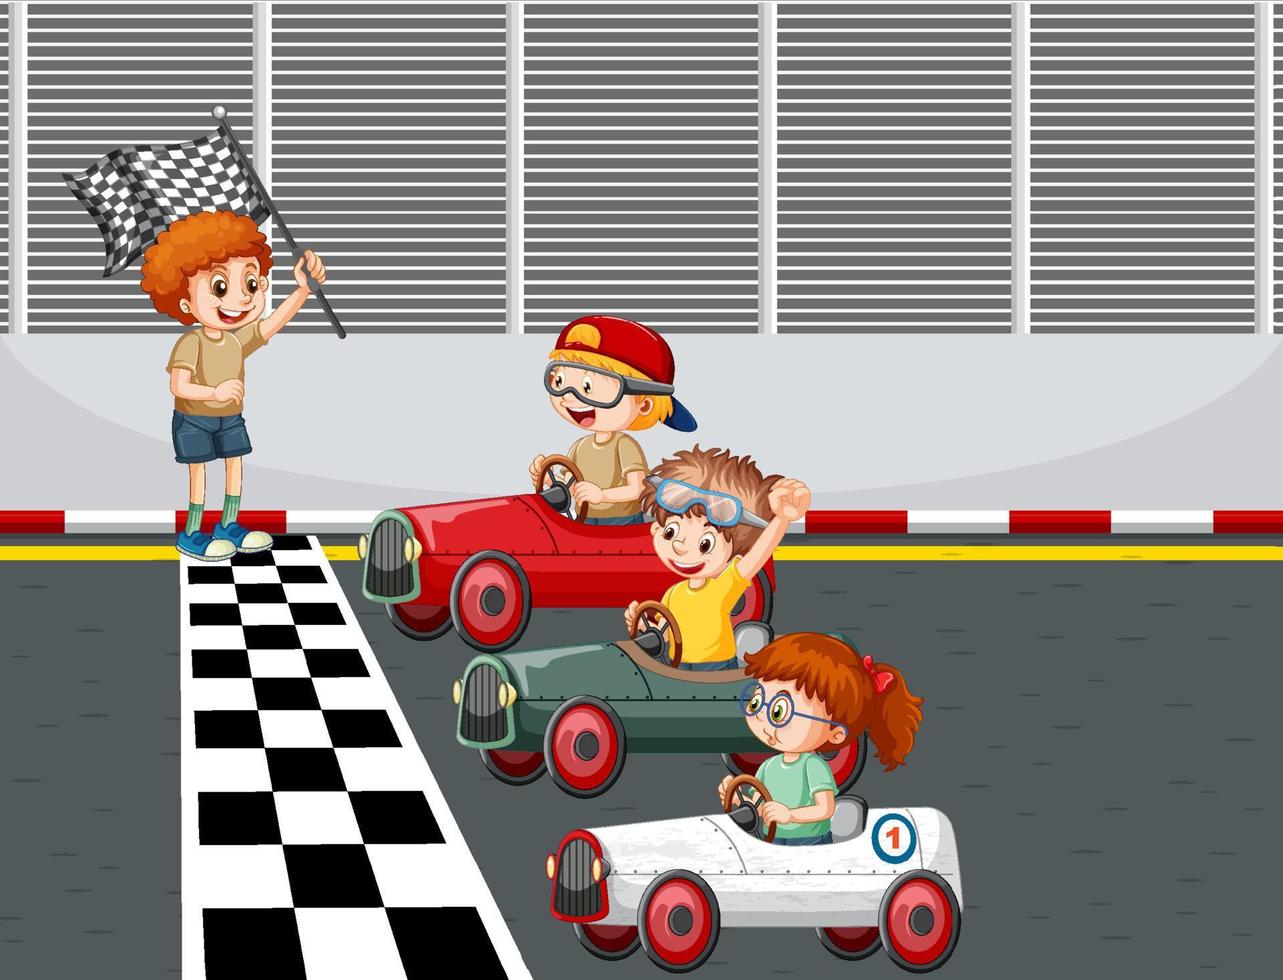 Escena de derby de jabonera con coche de carreras para niños. vector